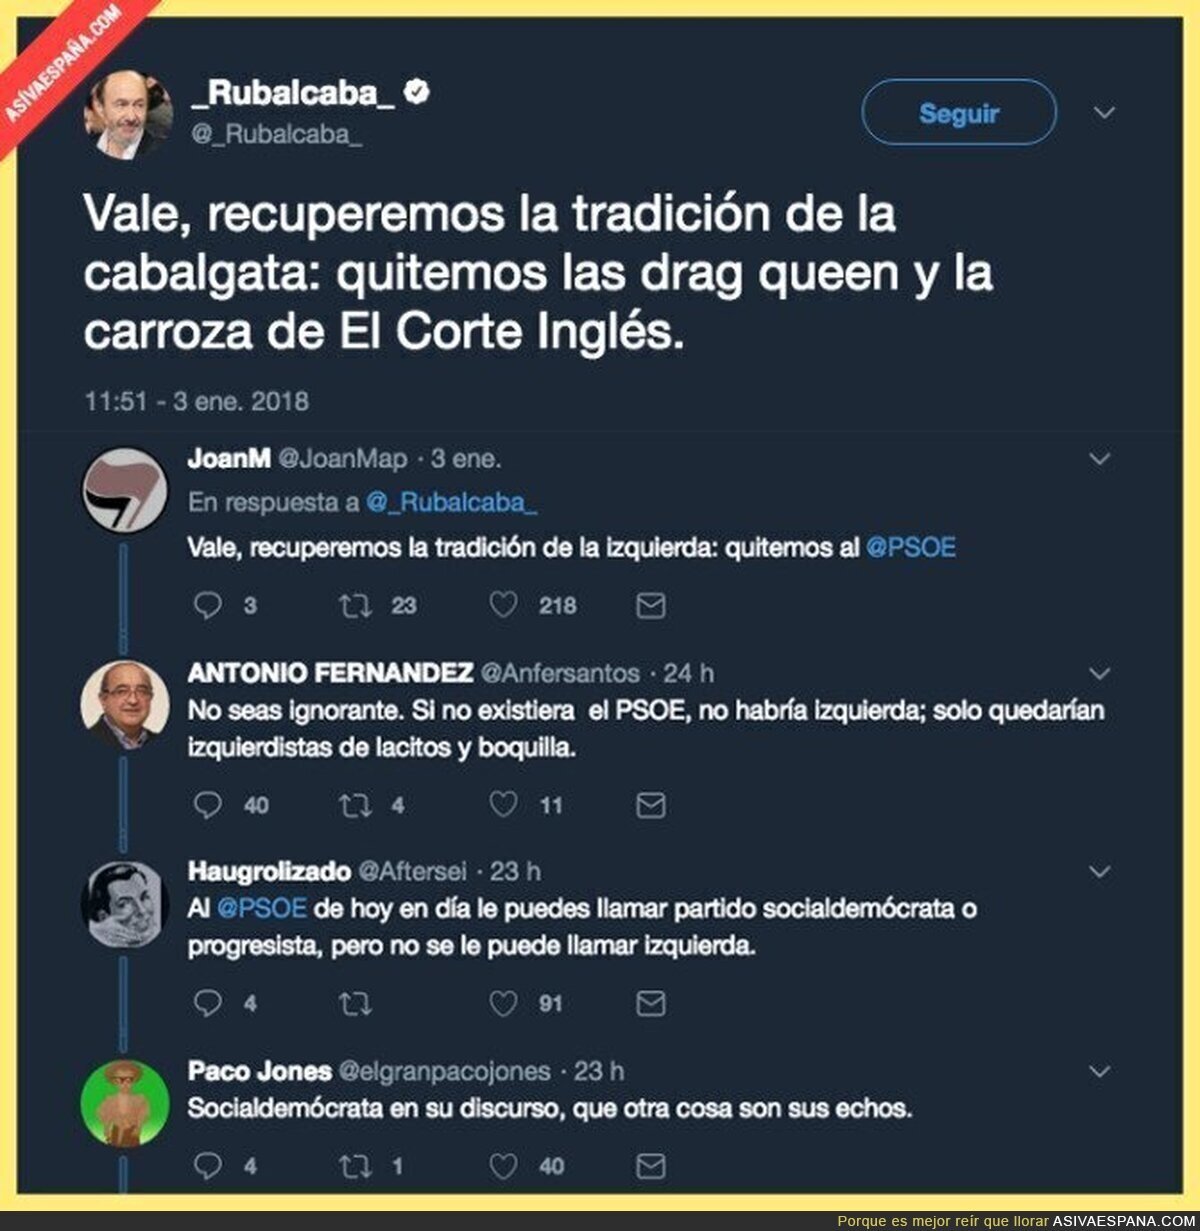 La solución a las cabalgatas de Madrid según Rubalcaba